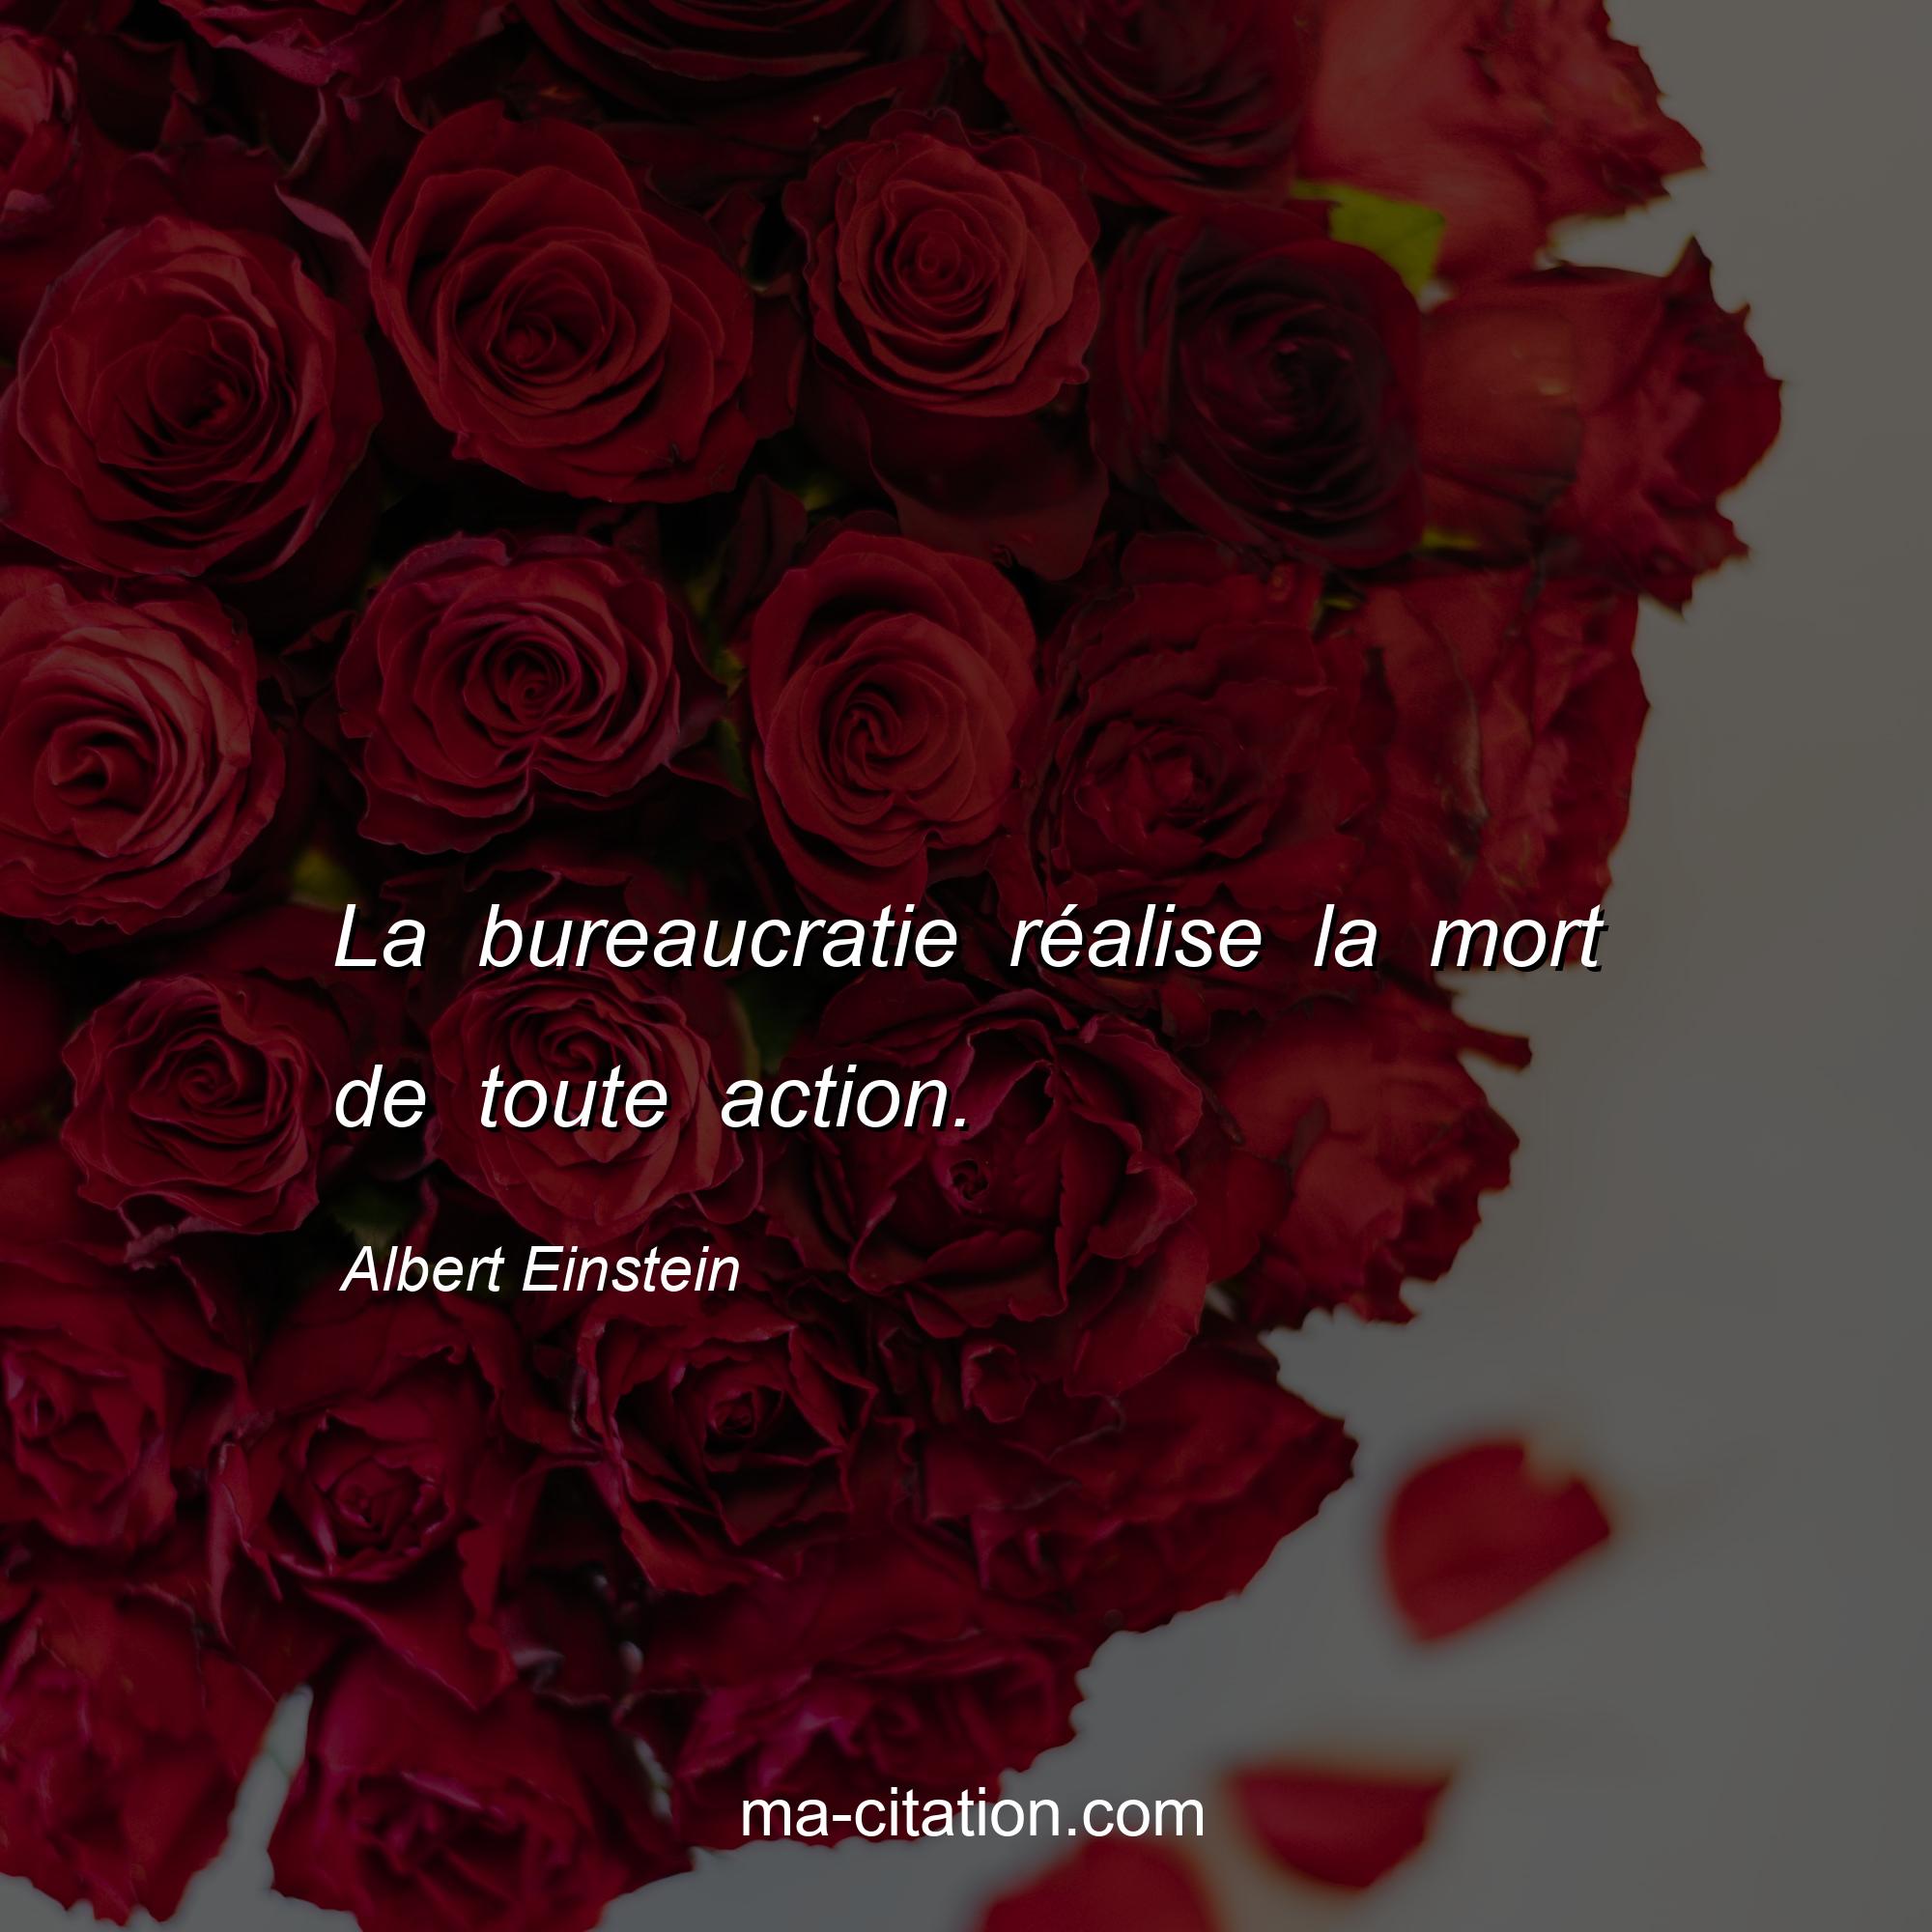 Albert Einstein : La bureaucratie réalise la mort de toute action.